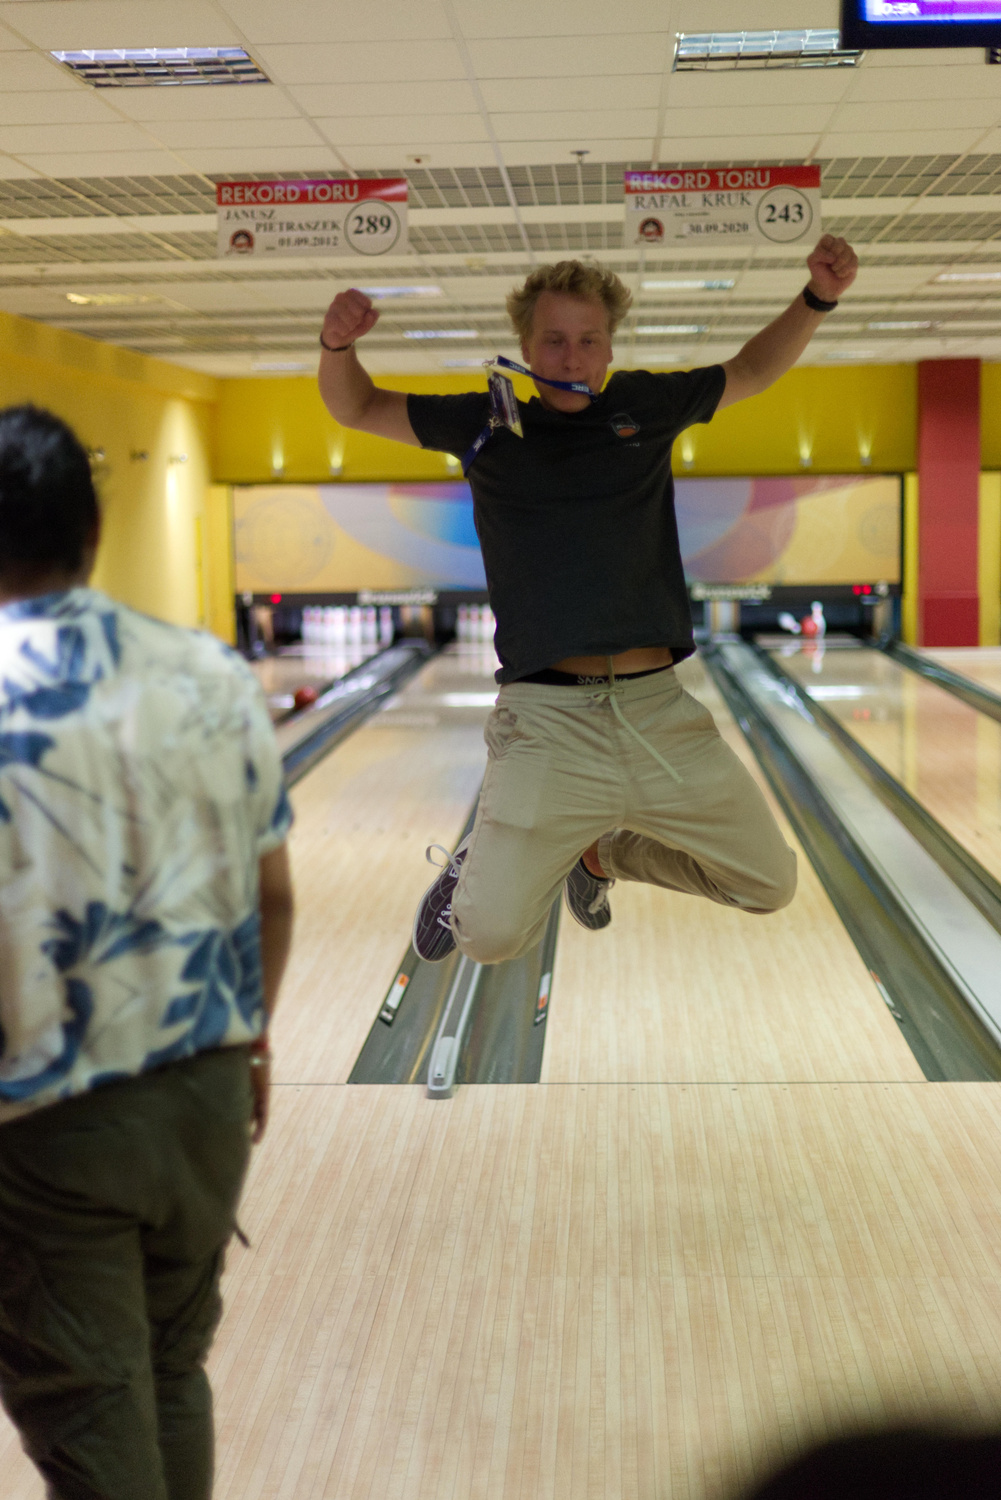 David springt in die Luft vor einer Bowling-Bahn.